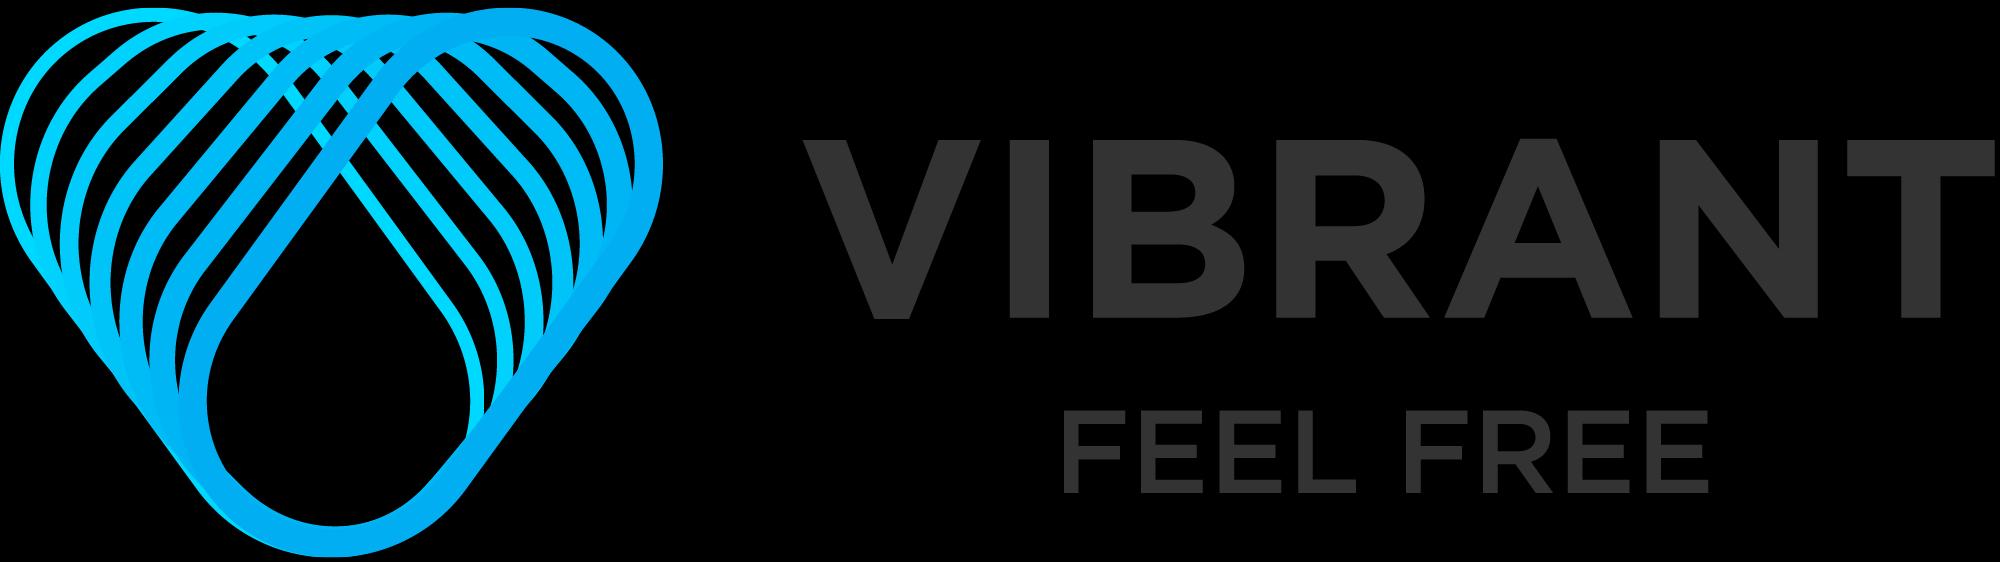 Vibrant (ויברנט בע"מ)_logo